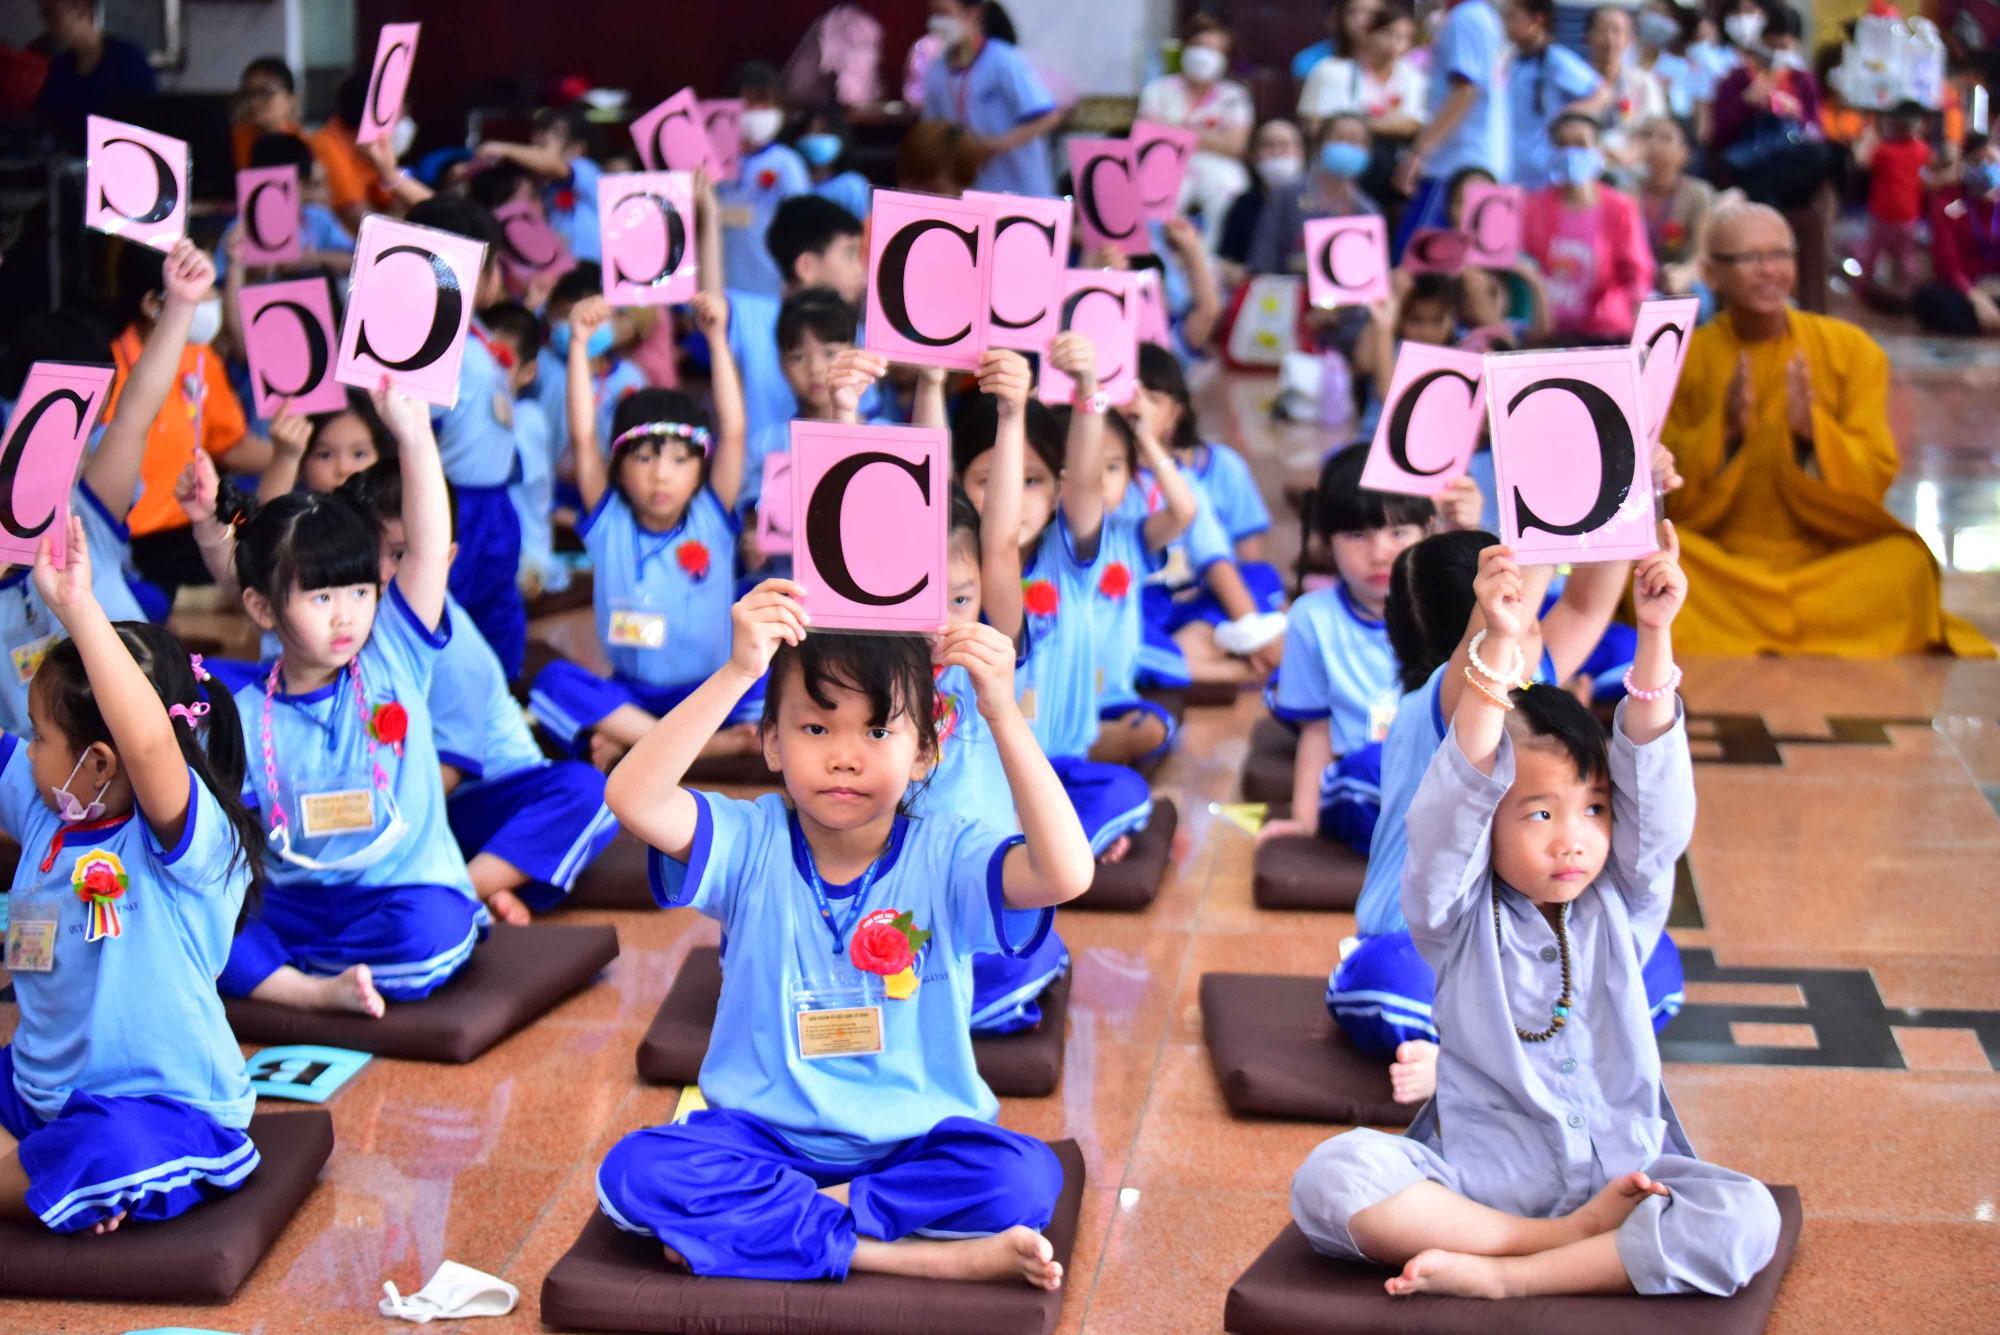 Lợi ích của việc cho trẻ em đến chùa tu học Phật